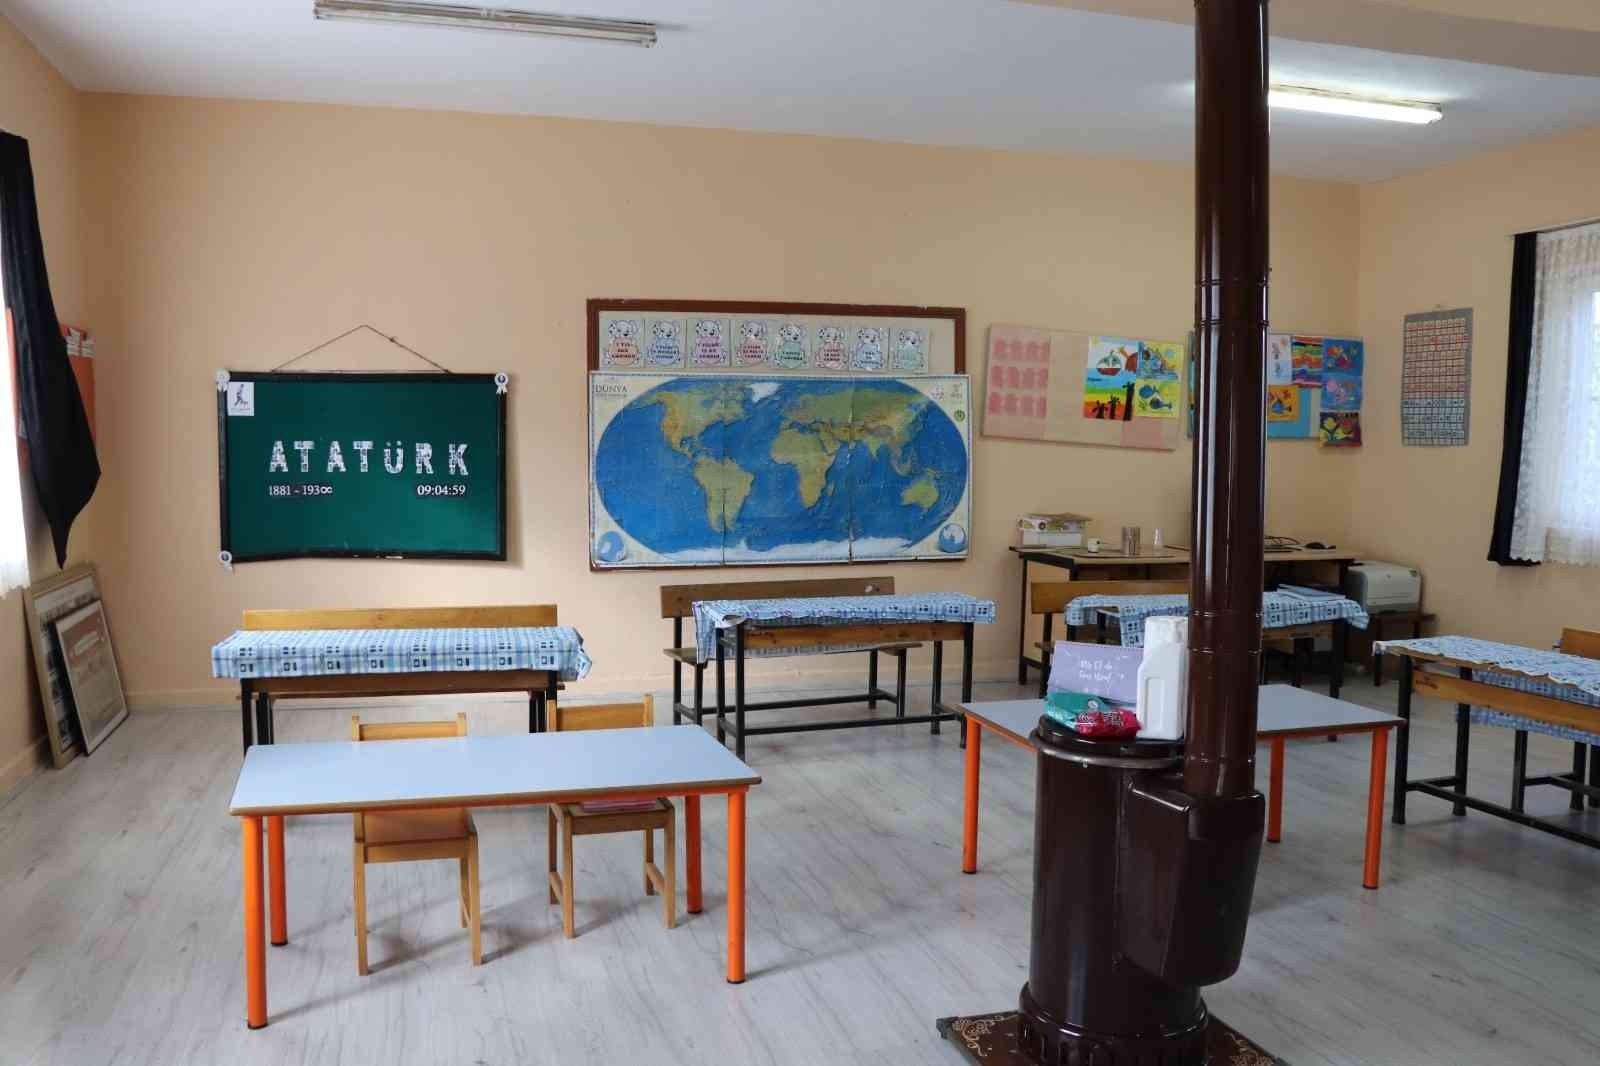 Nazilli Belediyesi Hisarcık İlkokulu’nu yeni görünümüne kavuşturdu #aydin